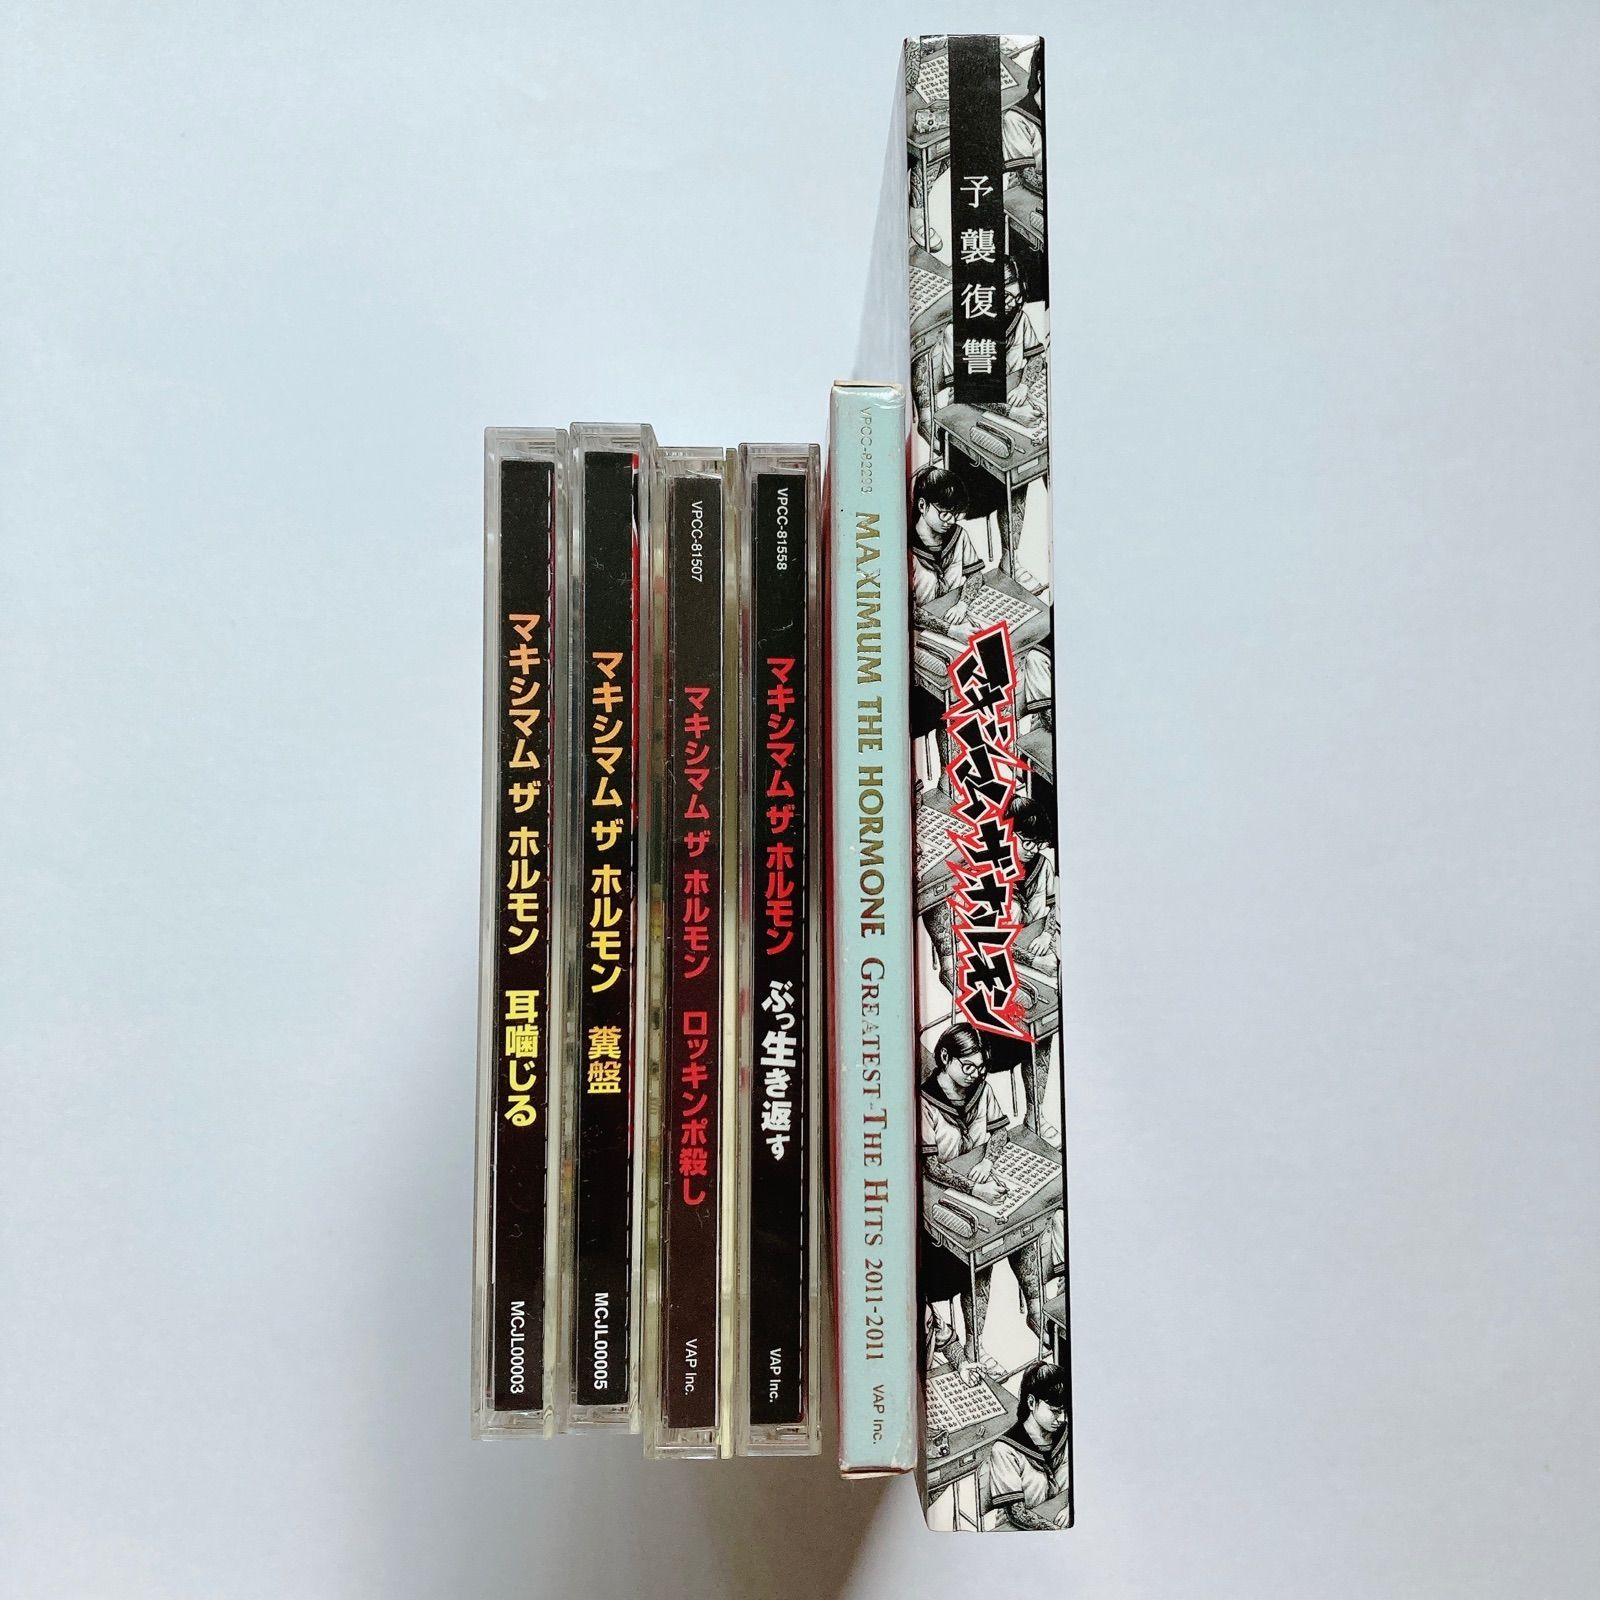 マキシマムザホルモン CD 6枚セット - メルカリ